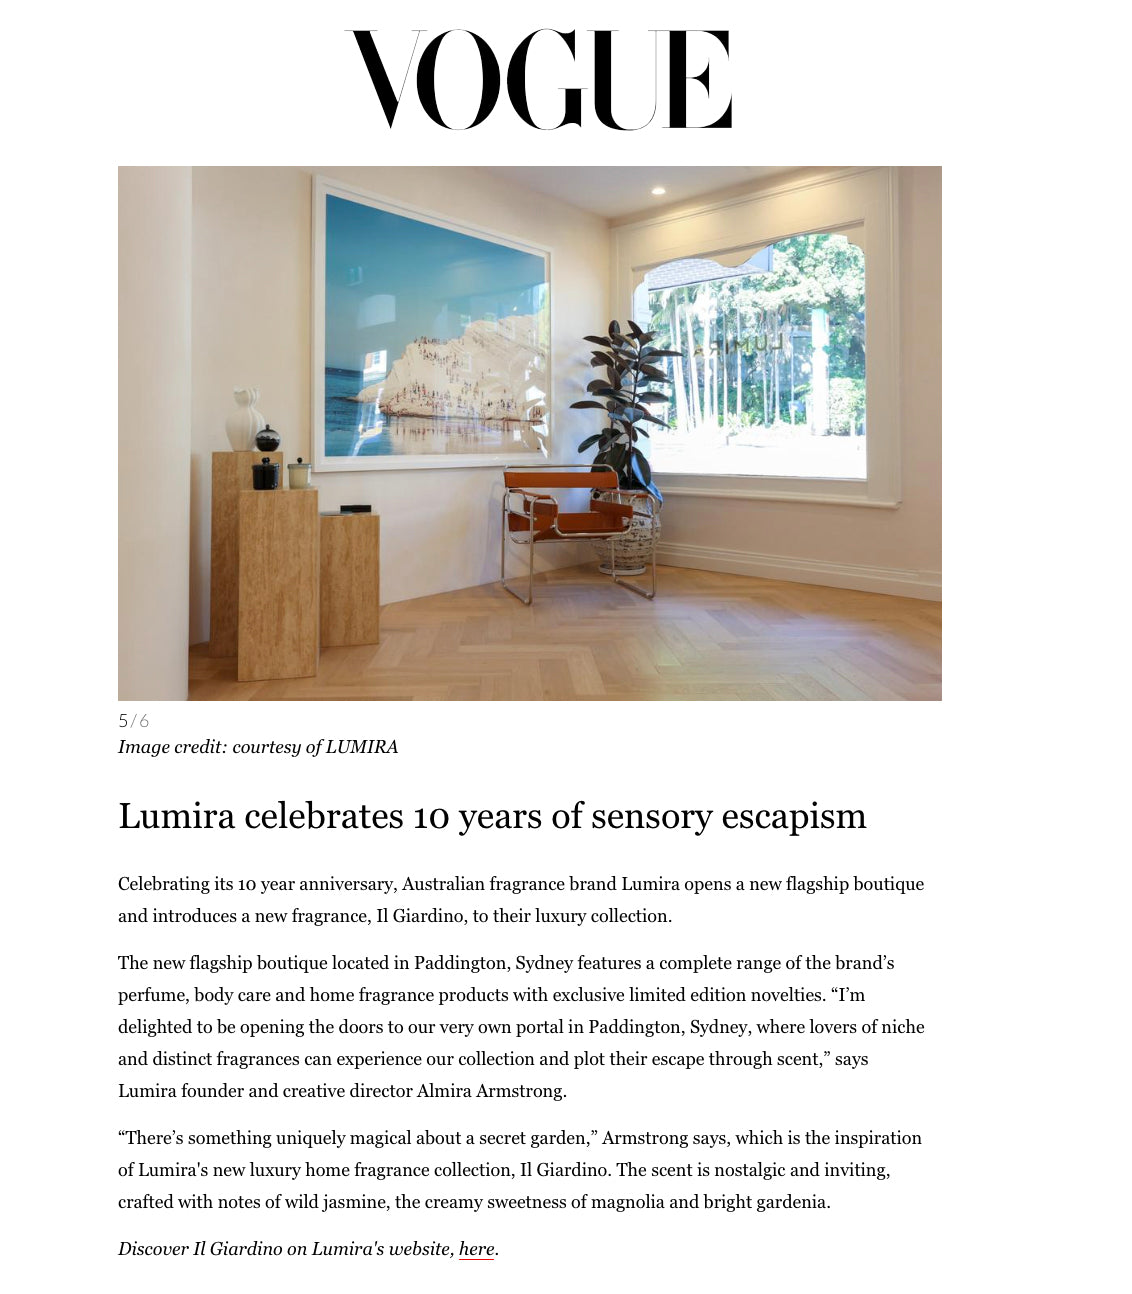 Vogue features Lumira